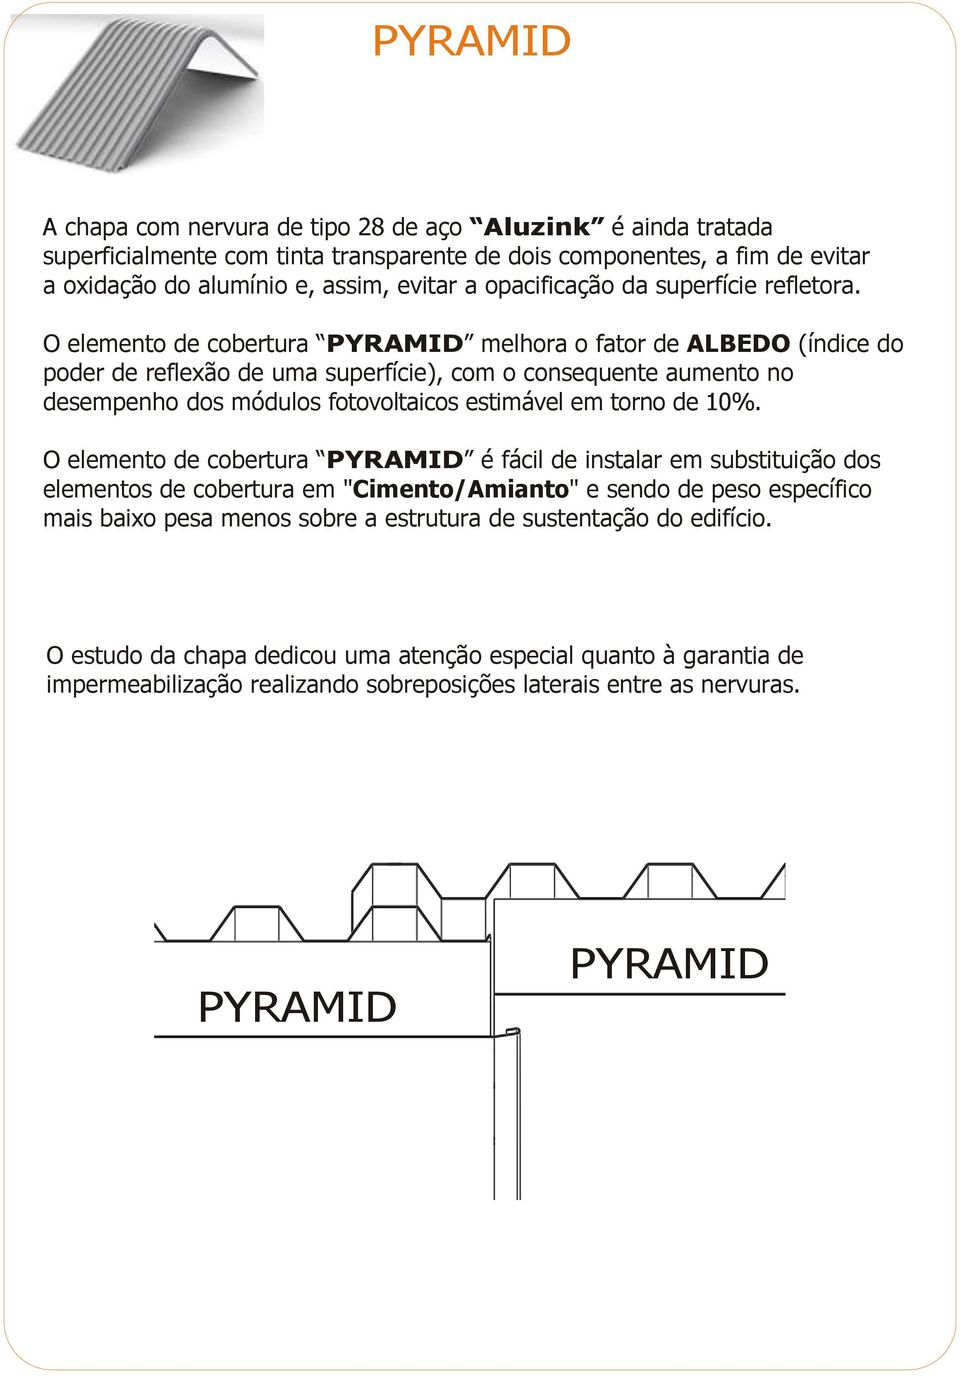 O elemento de cobertura PYRAMID melhora o fator de ALBEDO (índice do poder de reflexão de uma superfície), com o consequente aumento no desempenho dos módulos fotovoltaicos estimável em torno de